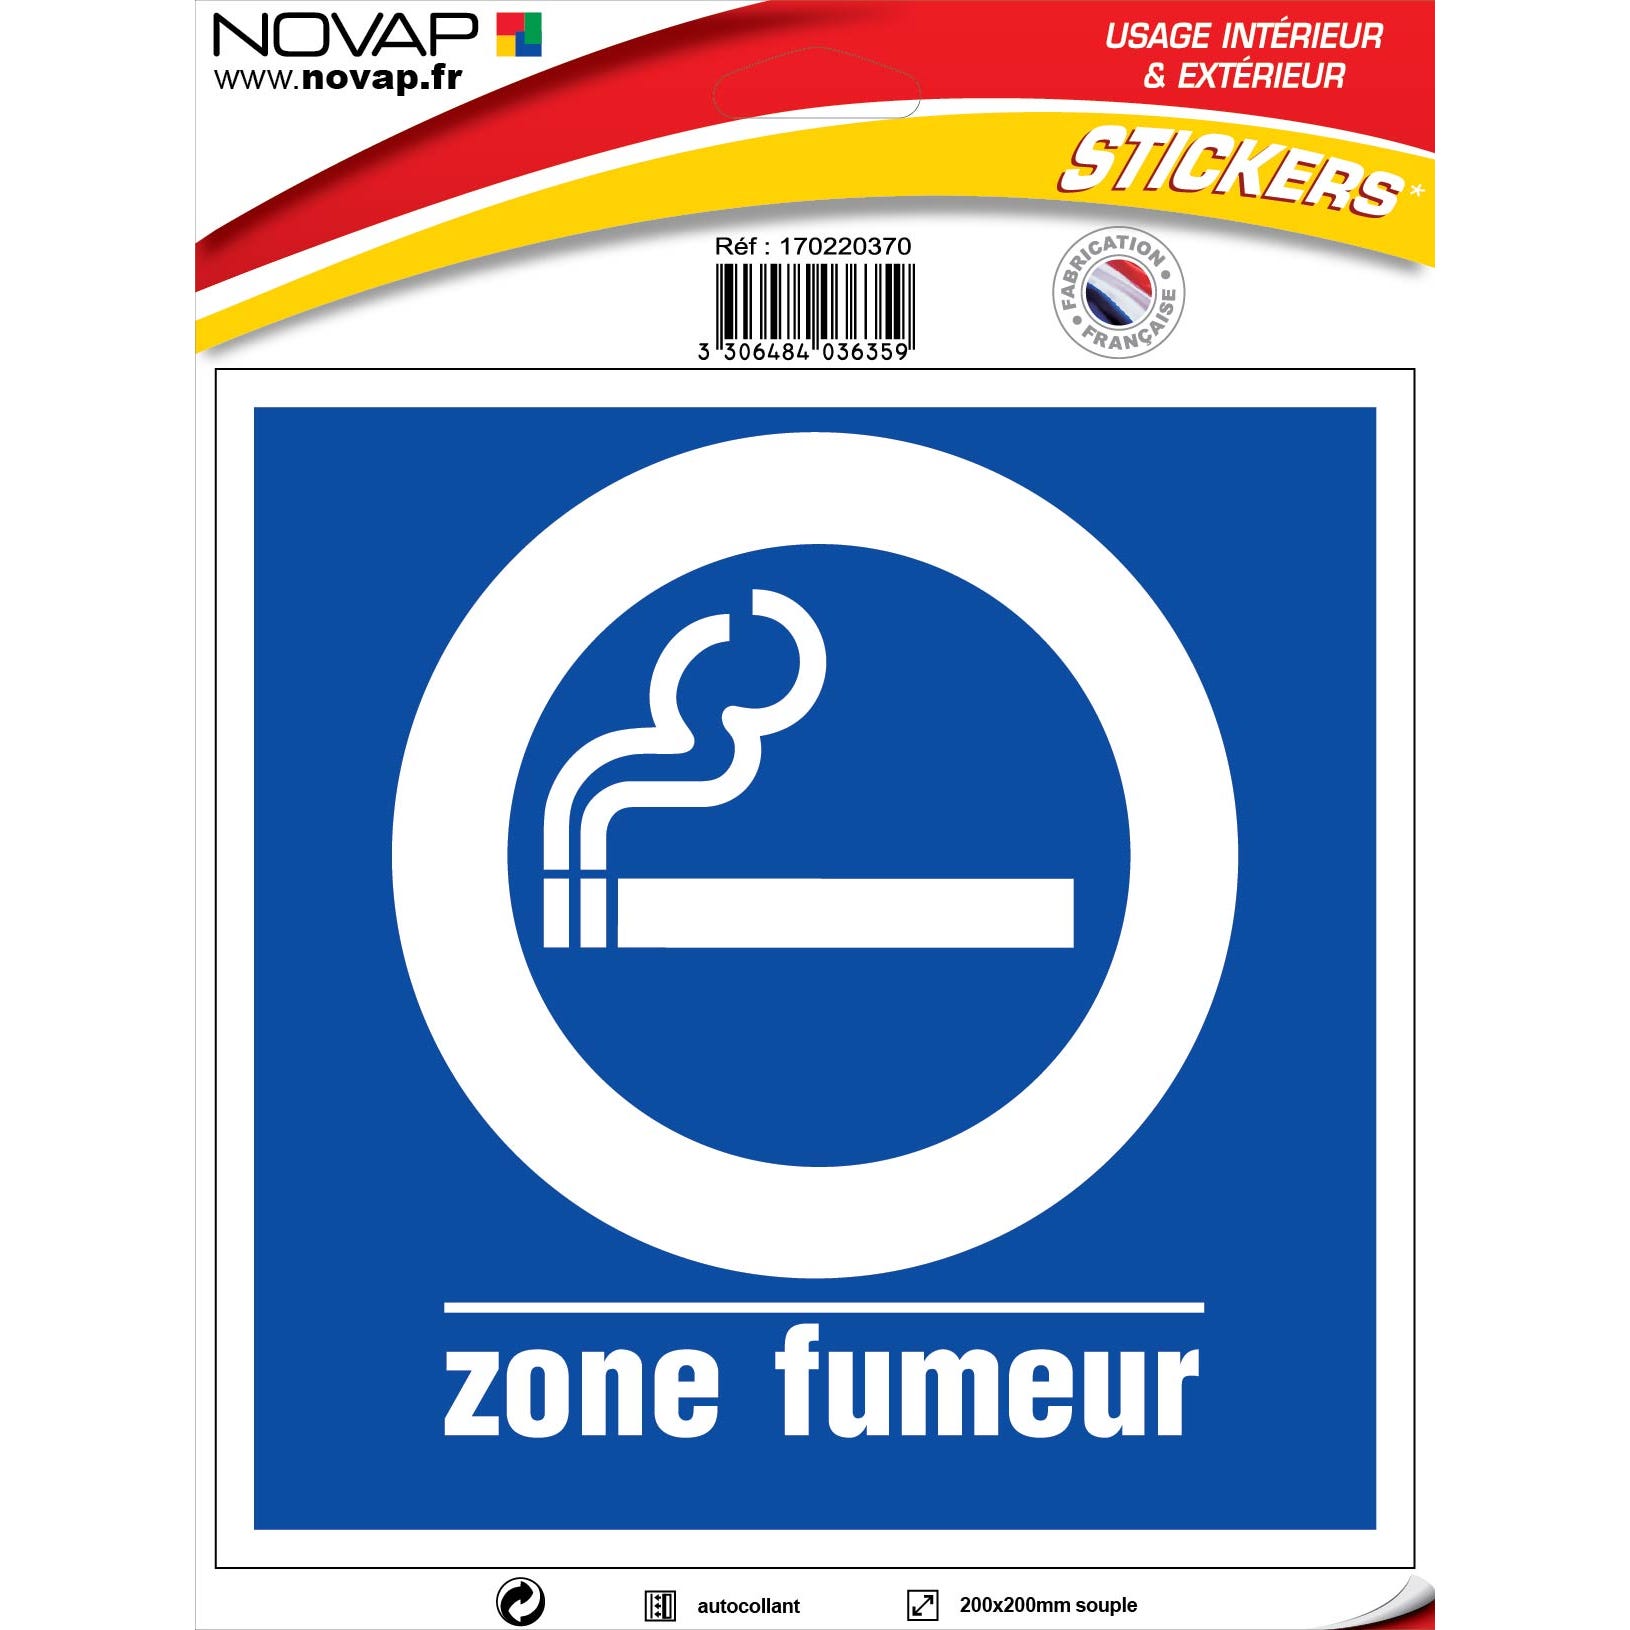 Panneau Zone fumeur - Vinyle adhésif 200x200mm - 4036359 0